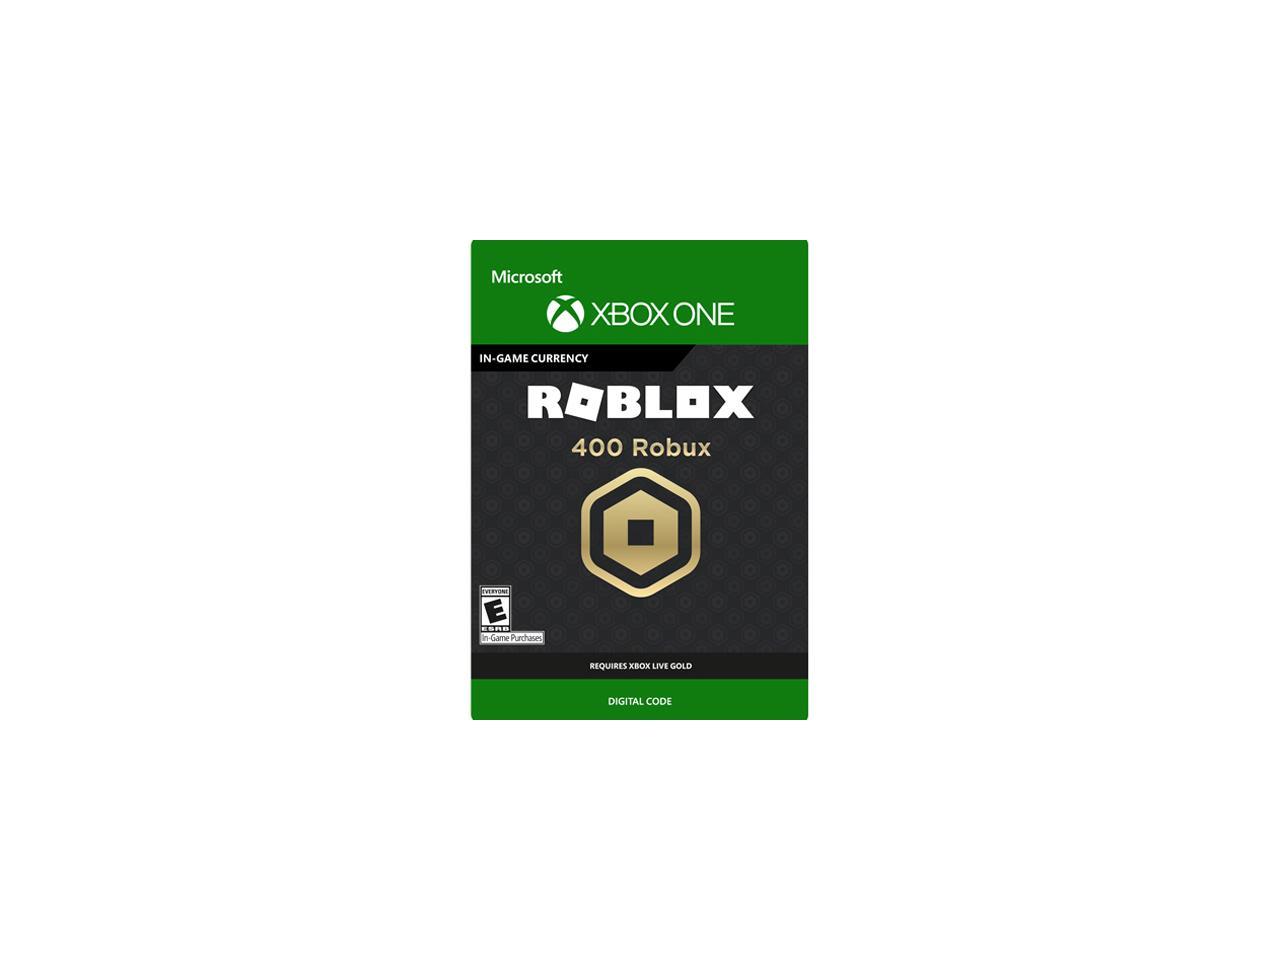 400 Robux For Xbox One Digital Code Newegg Com - 400 robux for xbox one digital code